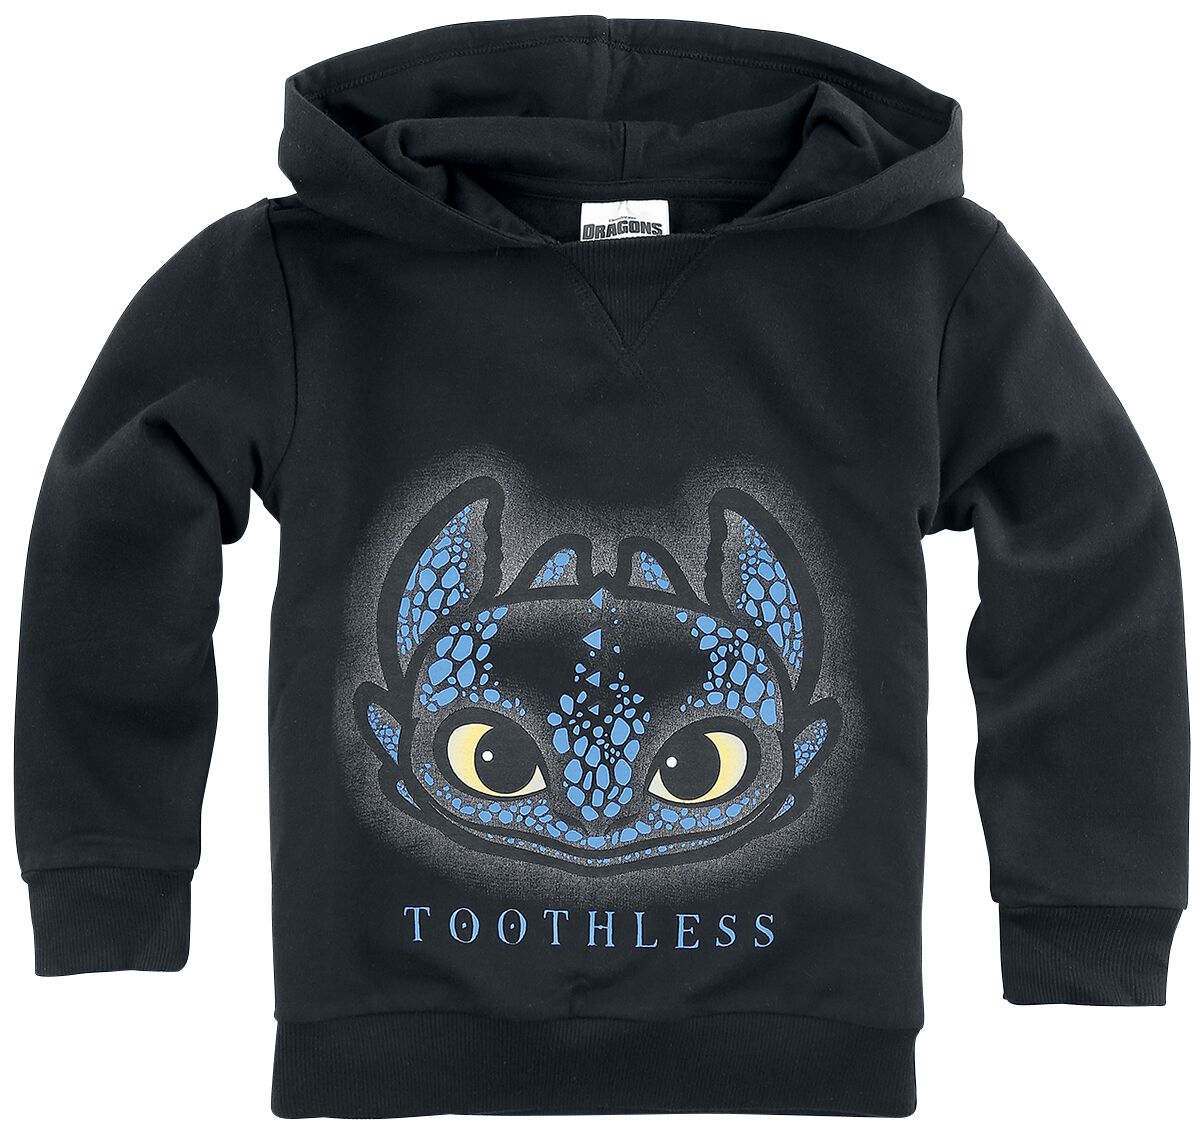 Levně Drachenzähmen leicht gemacht Kids - Toothless detská mikina s kapucí černá